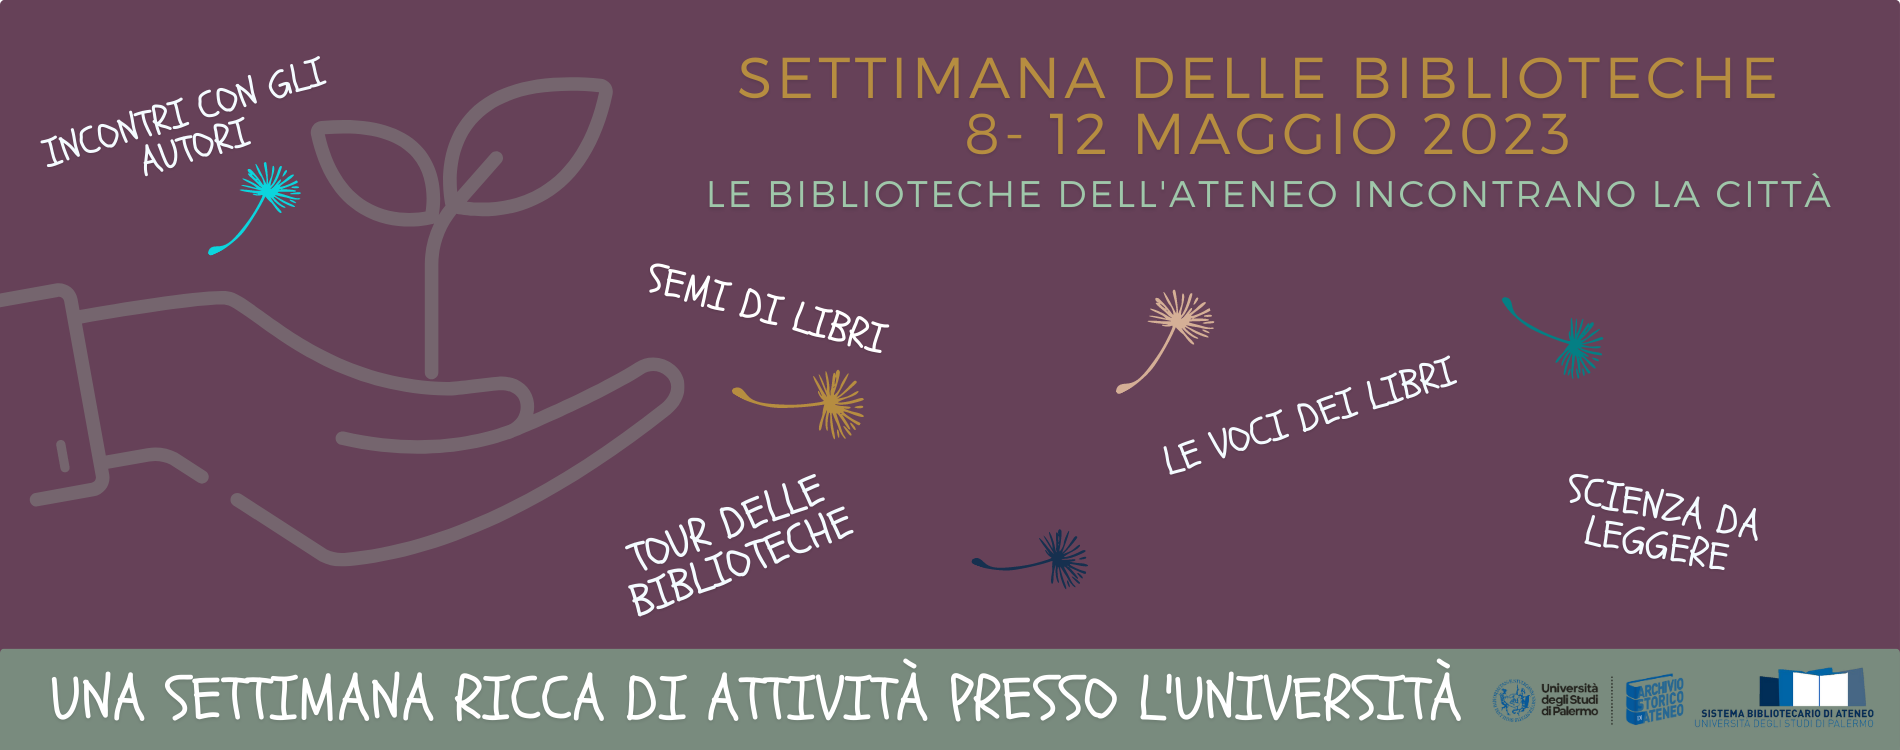 La settimana delle biblioteche all’Università di Palermo - Da lunedì 8 a venerdì 12 maggio